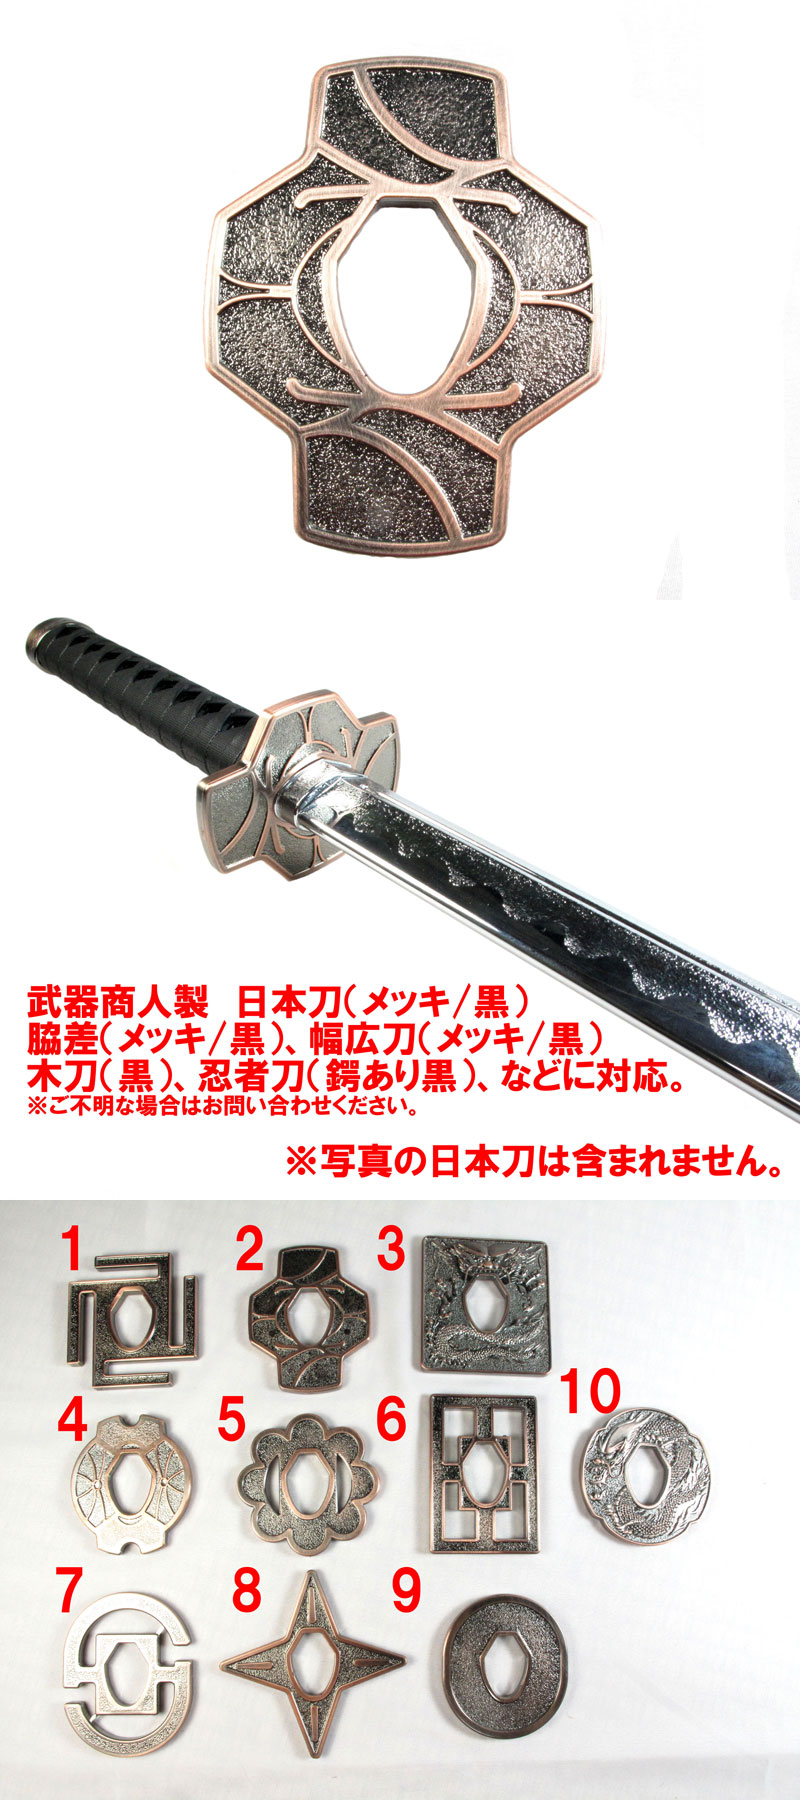 武器商人 BTBP02】日本刀オプション 鍔 TYPE-2 メッキ | 武器商人 ...